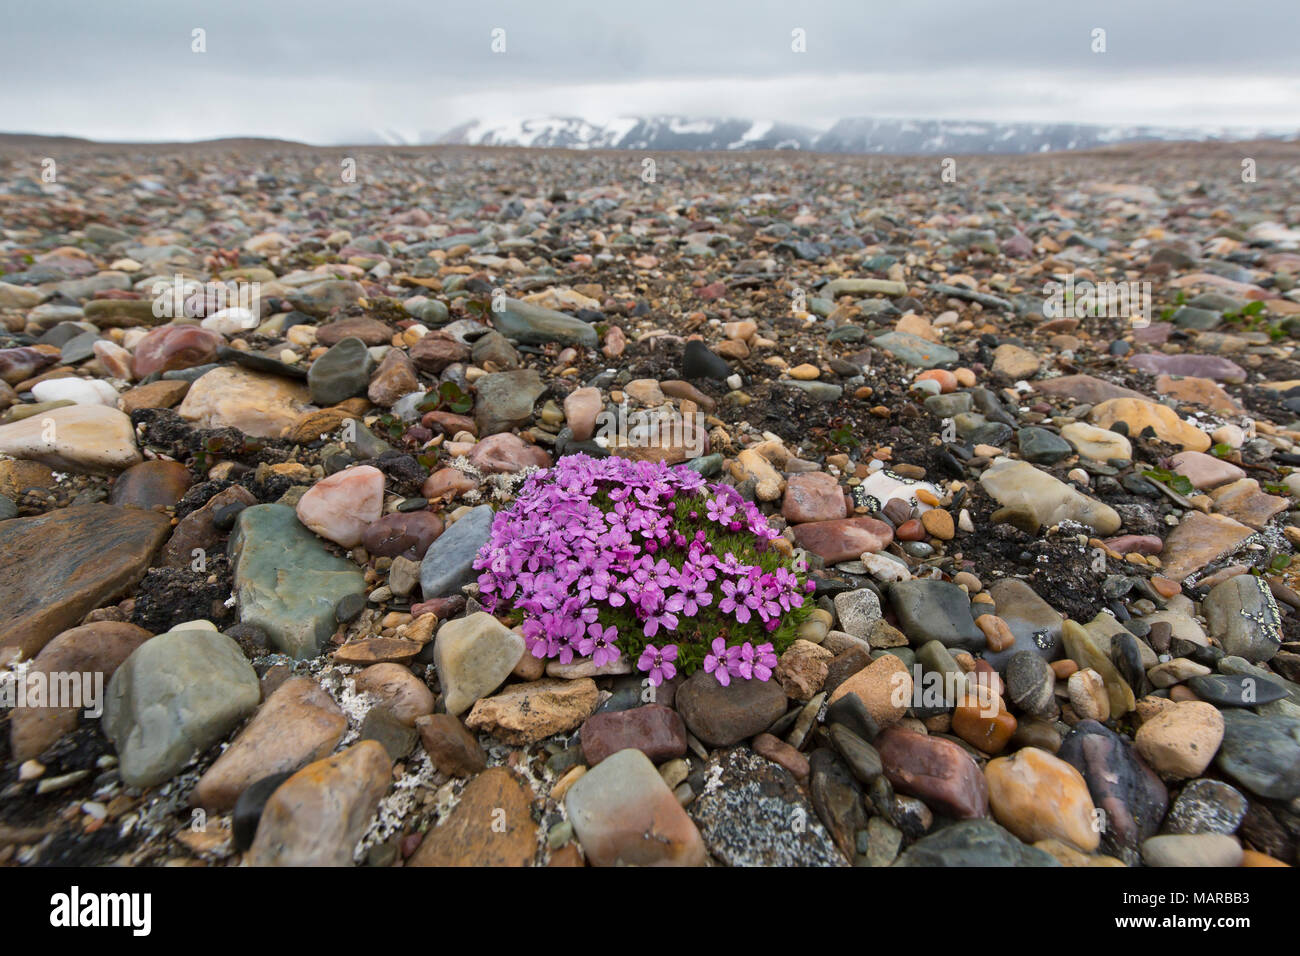 Rose coussin, silène acaule (Silene acaulis). Plante à fleurs entre les cailloux. Svalbard Banque D'Images